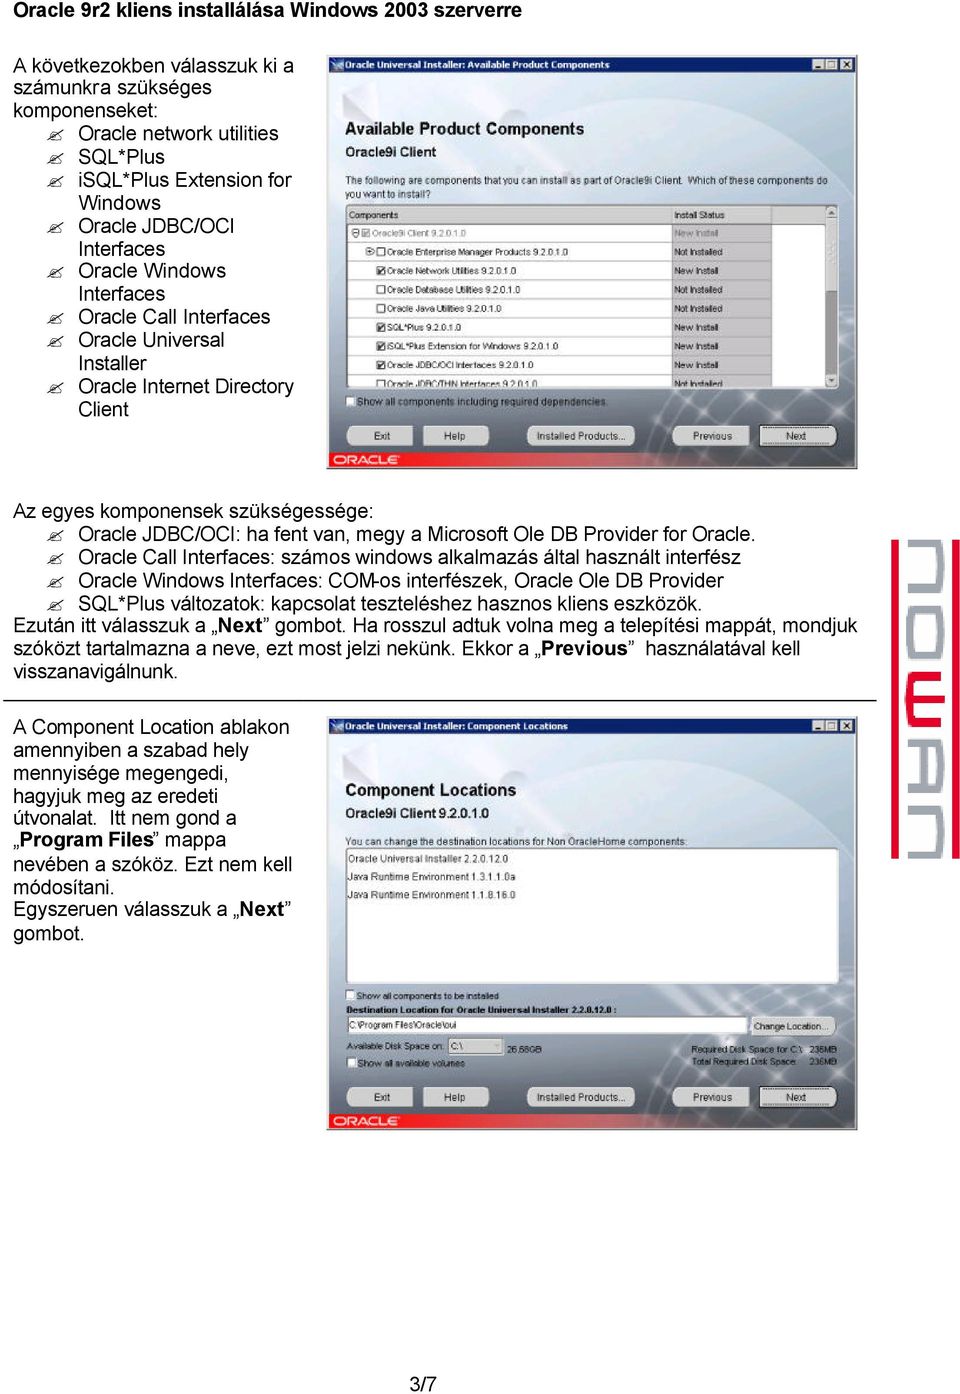 Oracle Call Interfaces: számos windows alkalmazás által használt interfész Oracle Windows Interfaces: COM-os interfészek, Oracle Ole DB Provider SQL*Plus változatok: kapcsolat teszteléshez hasznos